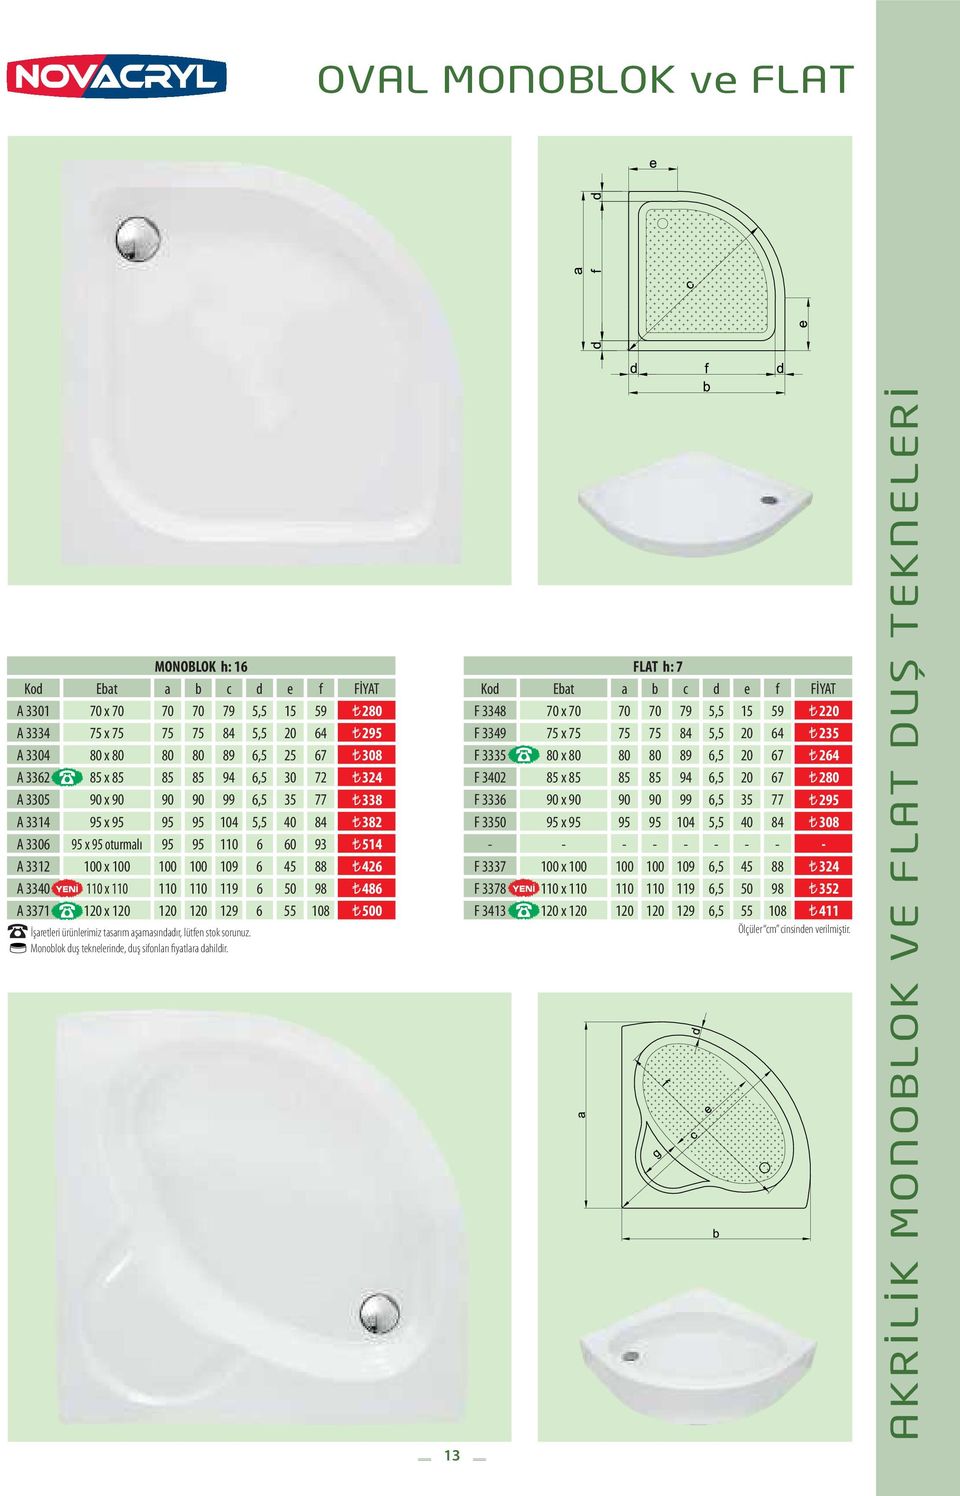 486 A 3371 120 x 120 120 120 129 6 55 108 500 İşaretleri ürünlerimiz tasarım aşamasındadır, lütfen stok sorunuz. Monoblok duş teknelerinde, duş sifonları fiyatlara dahildir.